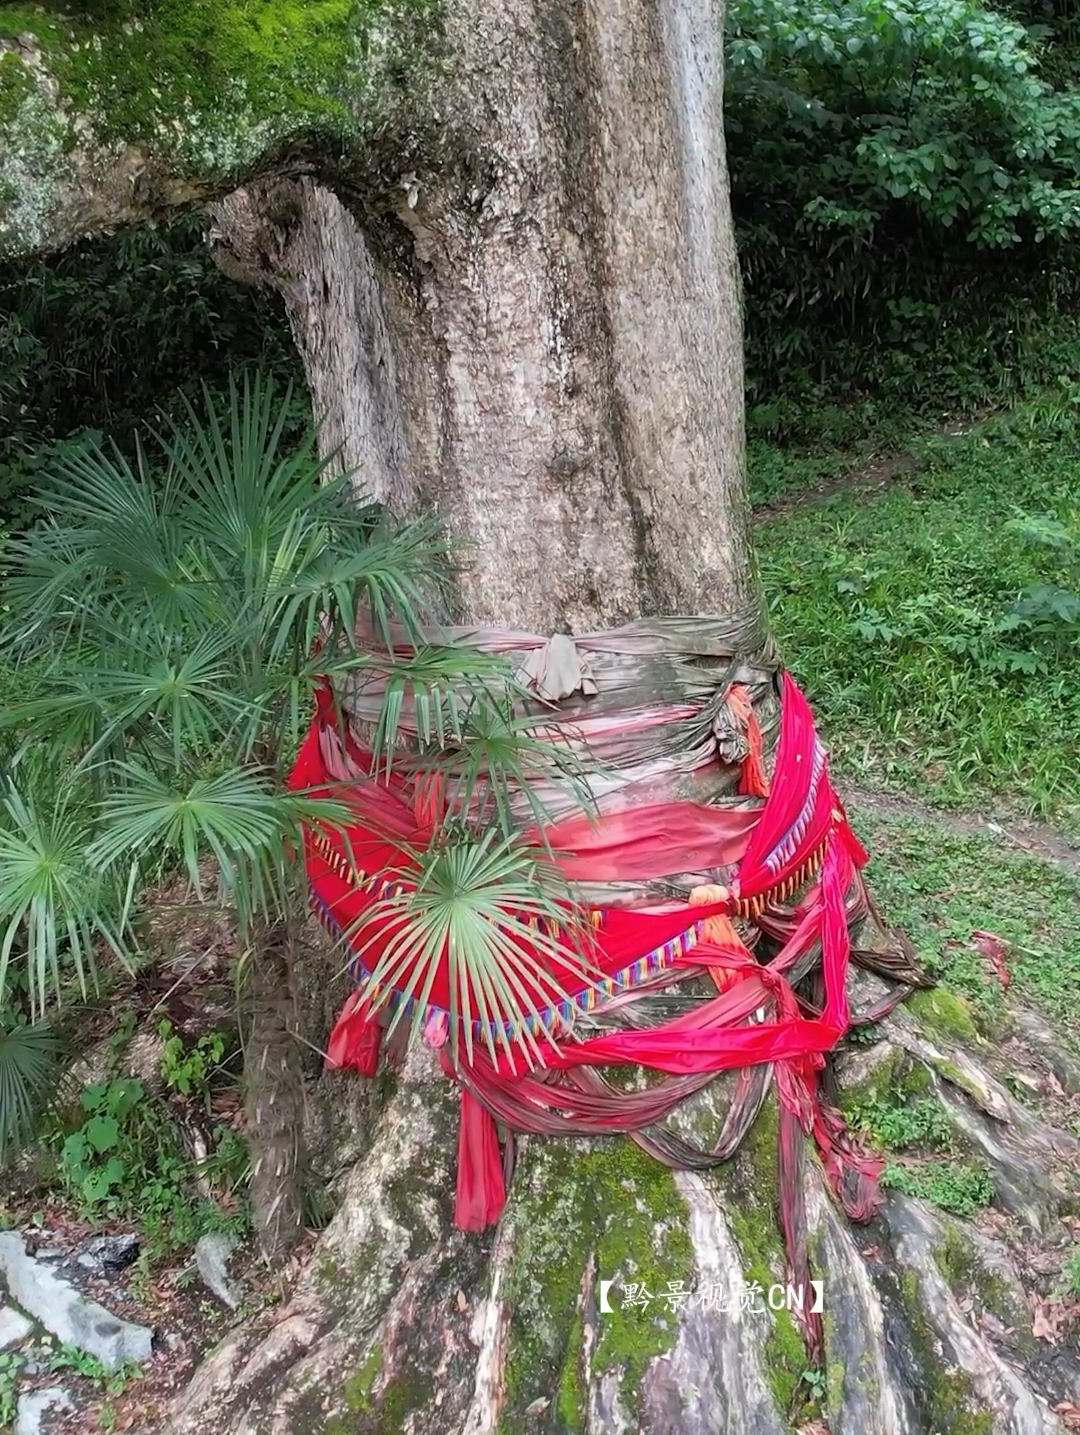 一棵树到底能值多少钱？眼前你所看到这棵树是亚洲最大的金丝楠木，曾经断掉的一根树枝竟然拍出40万的天价